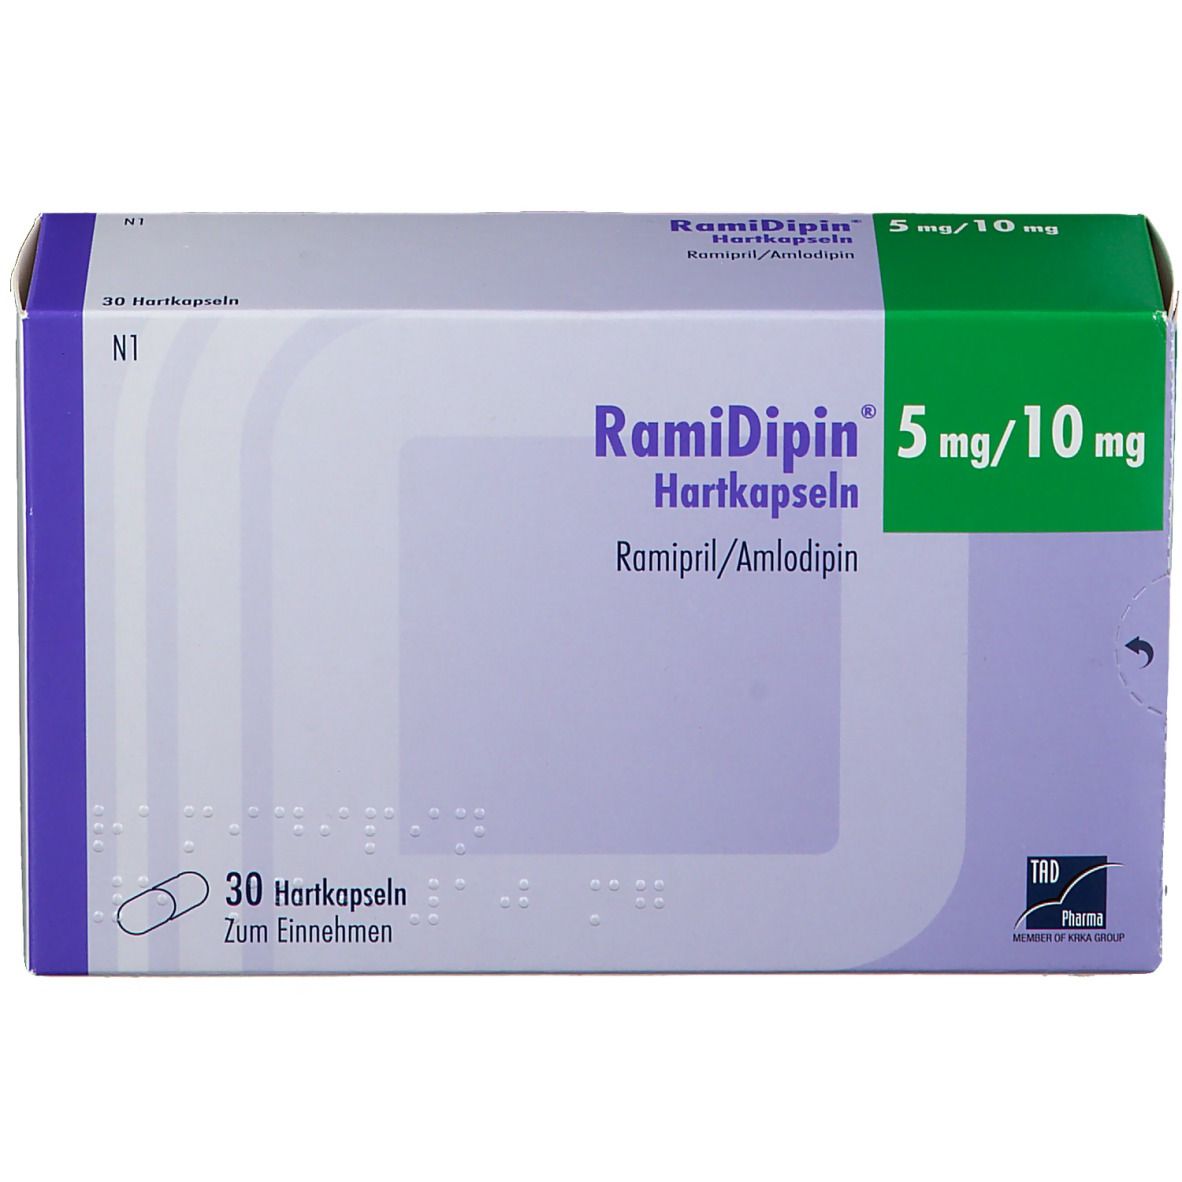 RamiDipin® 5 mg/10 mg